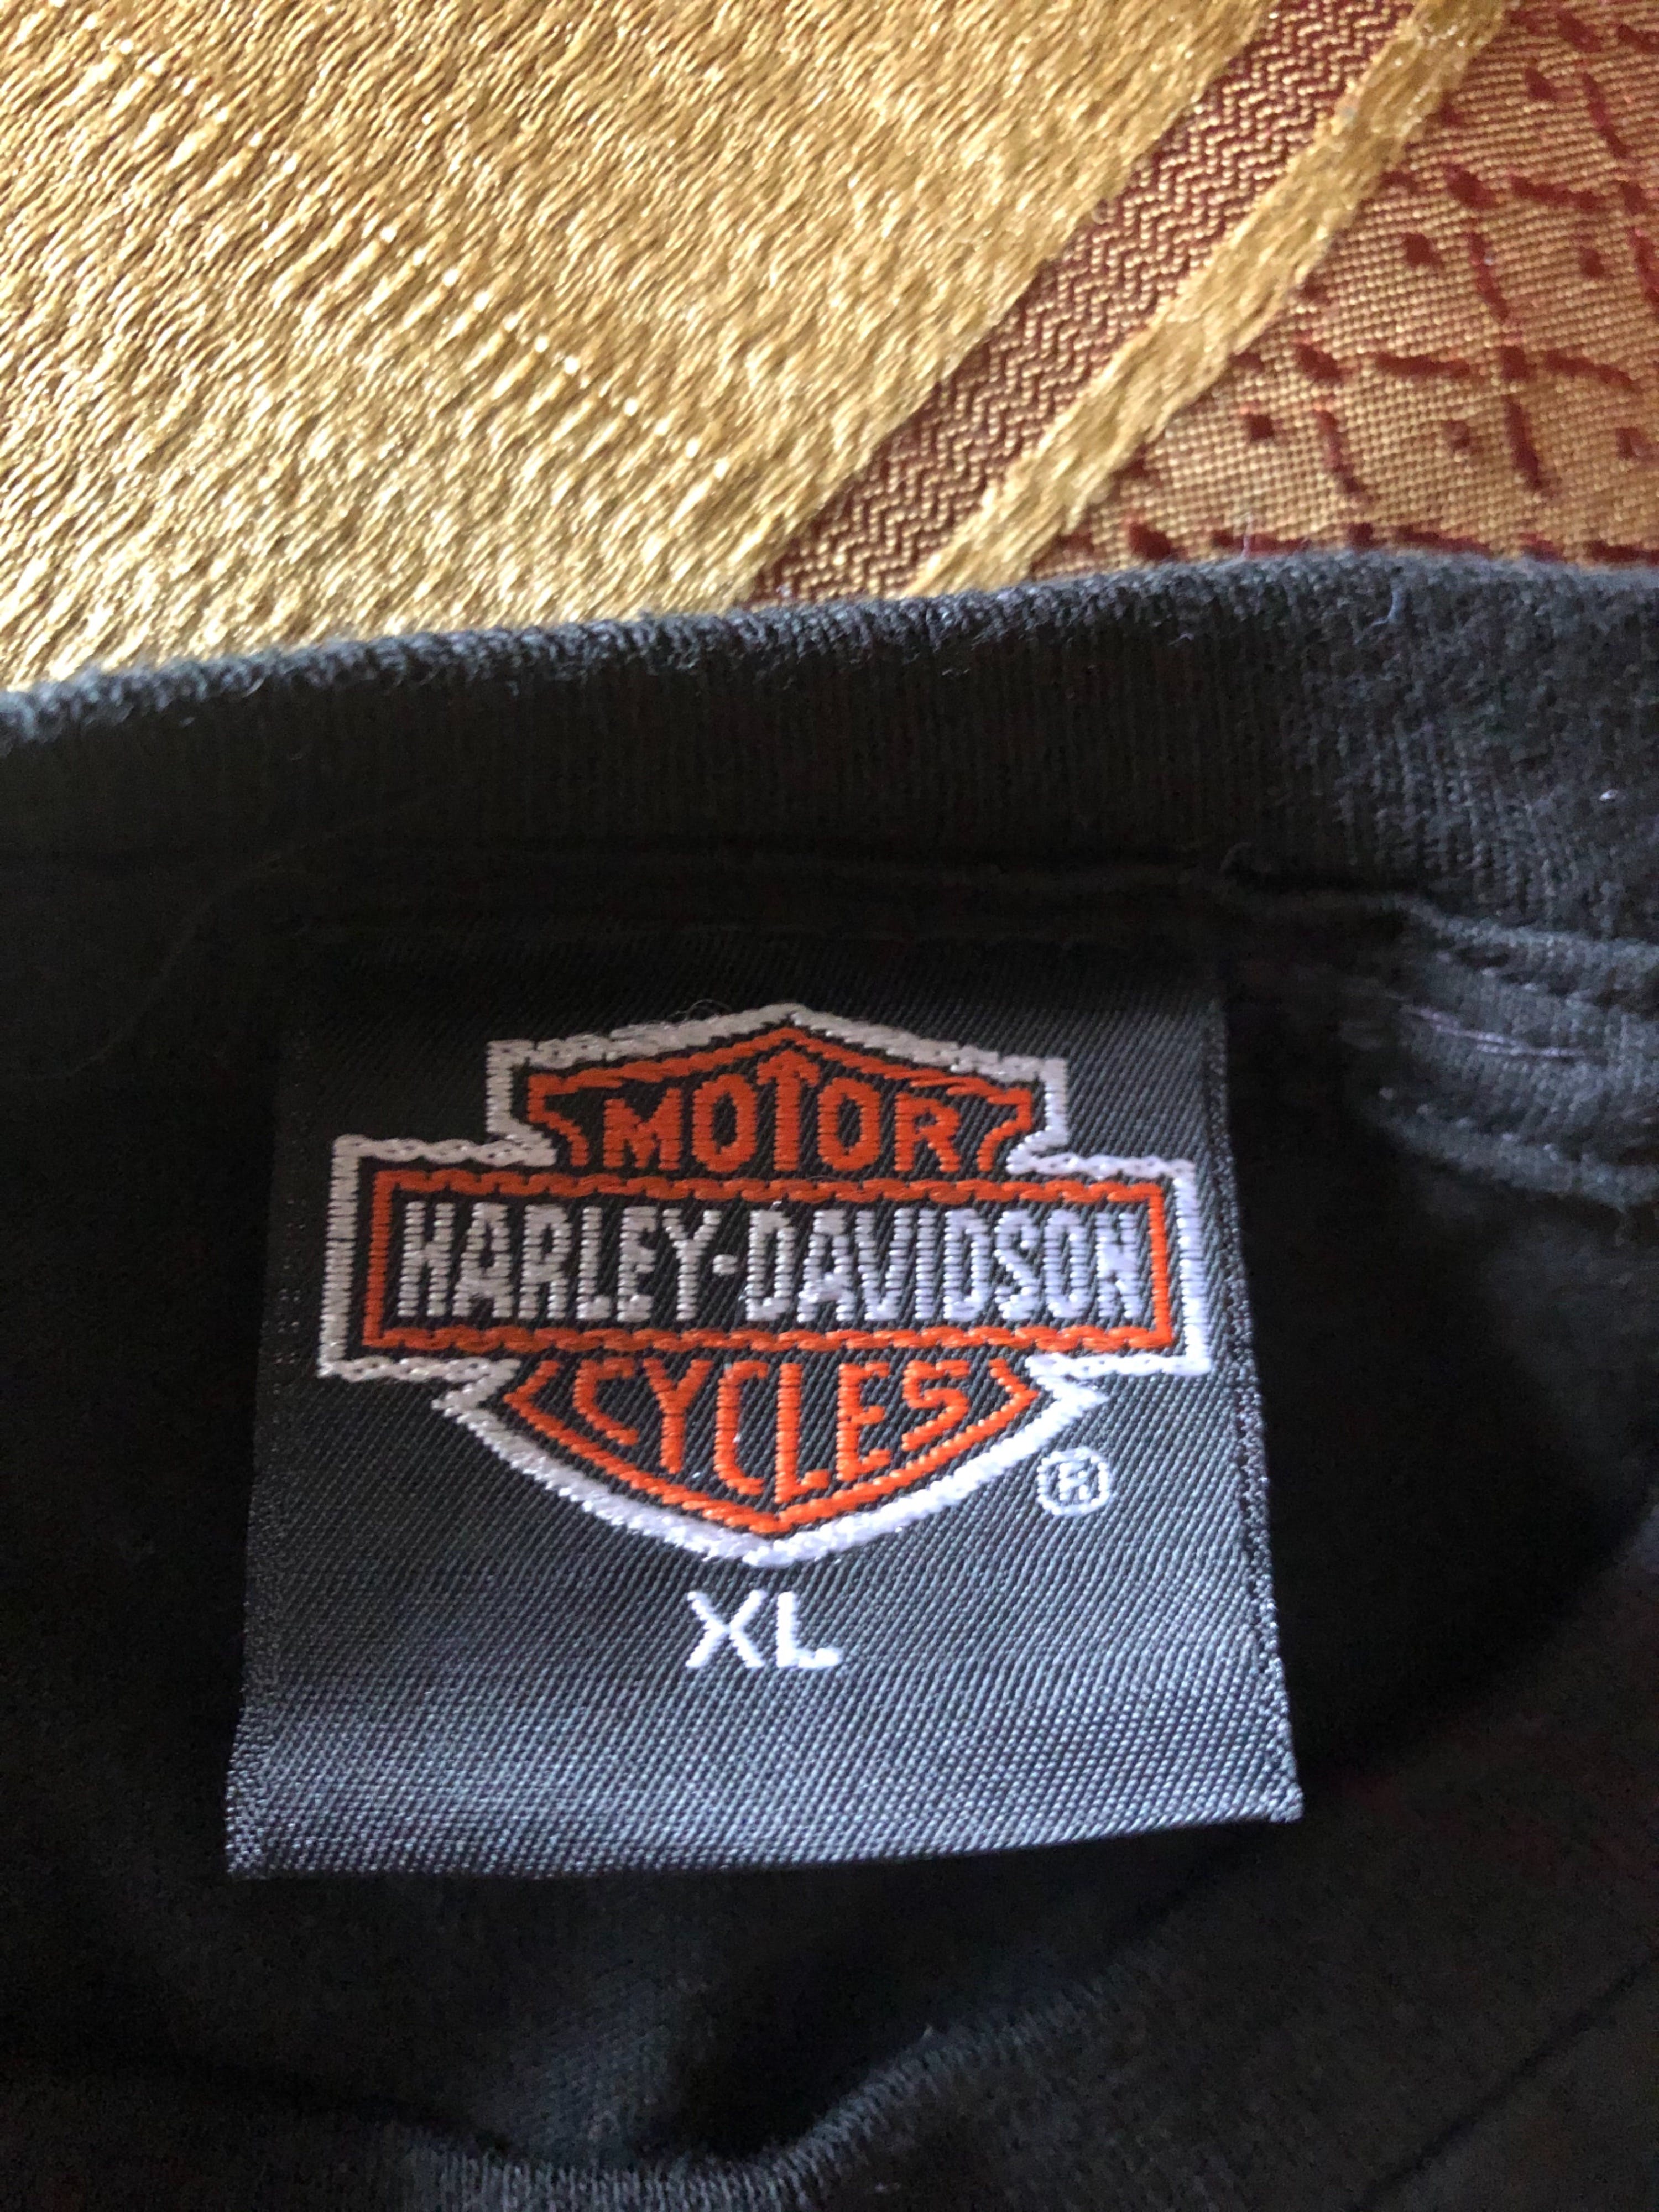 Vintage Harley Logo T-Shirt by Harley Davidson | Shop THRILLING